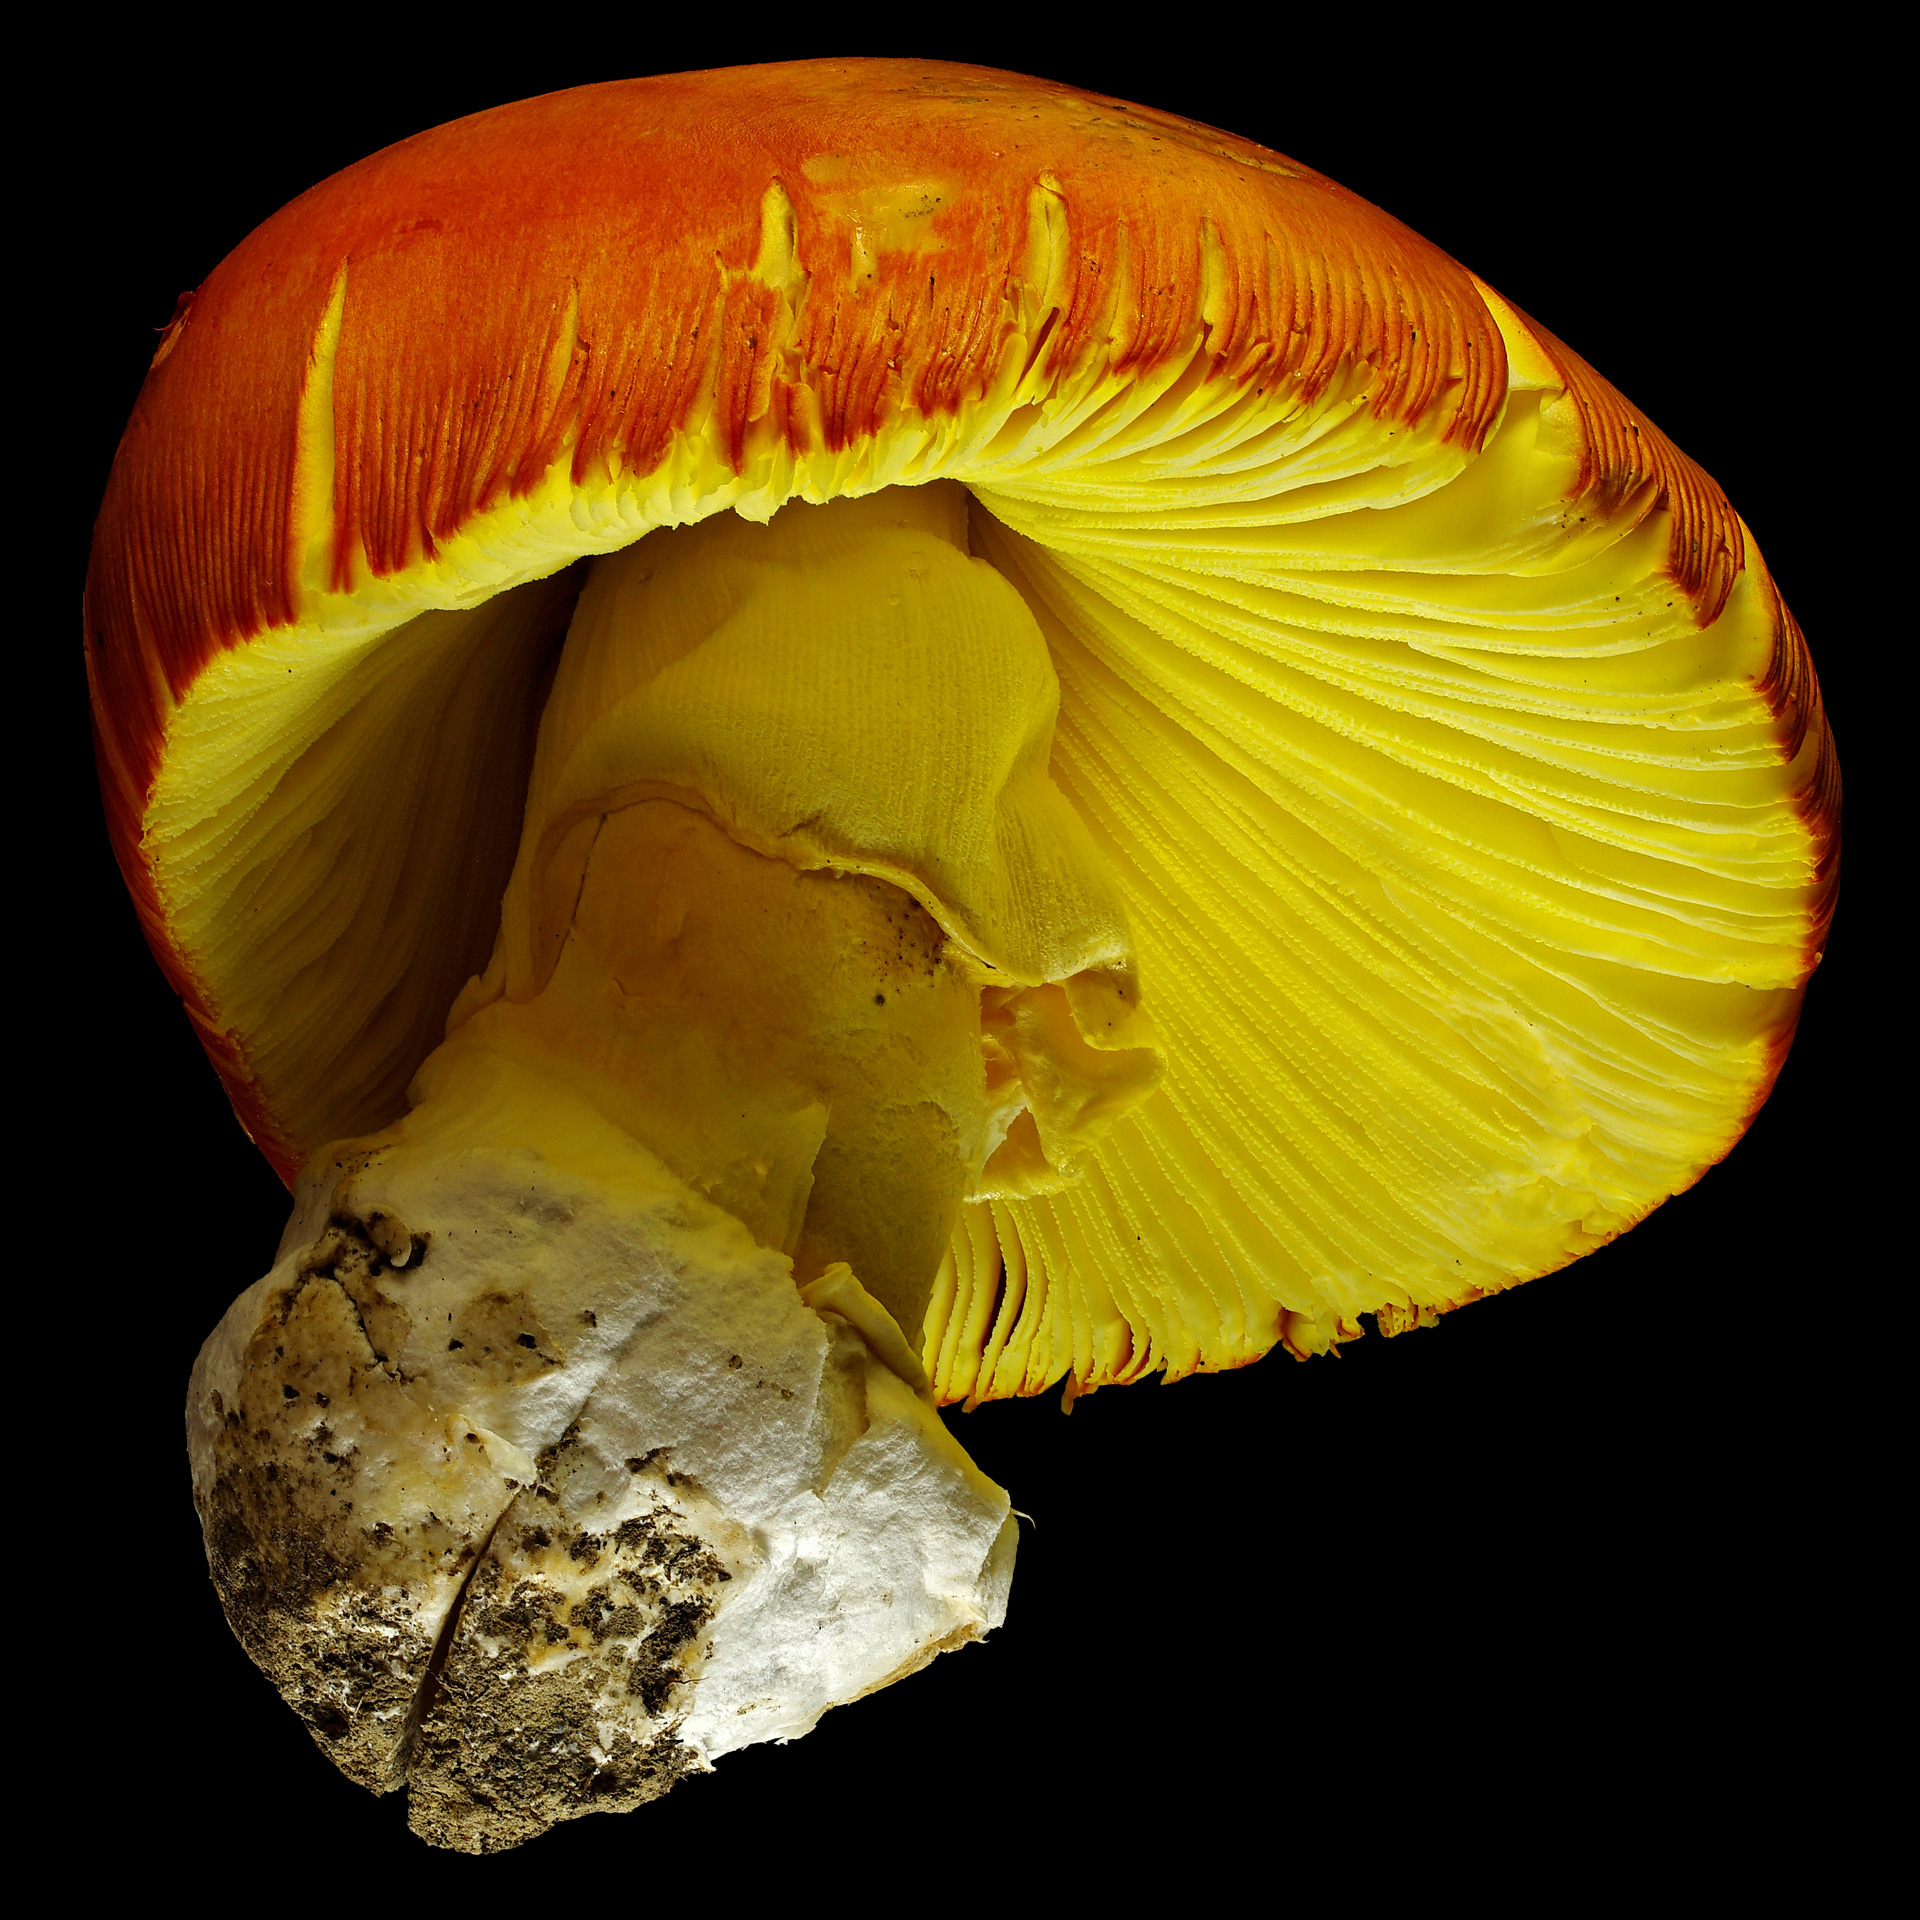 Ceasar’s mushroom: Amanita caesarea